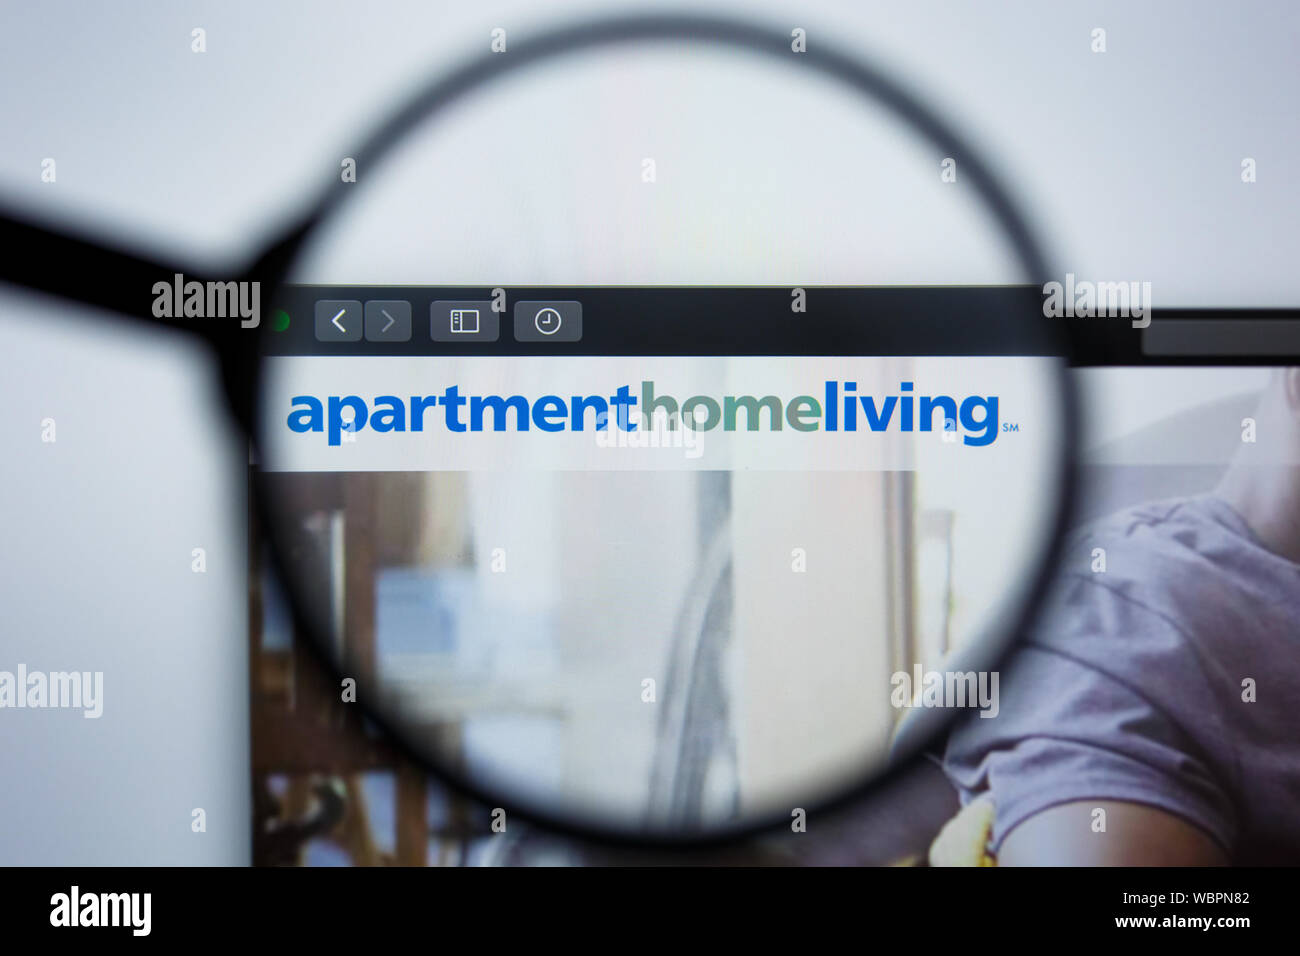 Los Angeles, Kalifornien, USA - 21. Jule2019: Illustrative Editorial von apartmenthomeliving Website Homepage. Apartment Home living Logo sichtbar auf dem Anzeigebildschirm angezeigt. Stockfoto